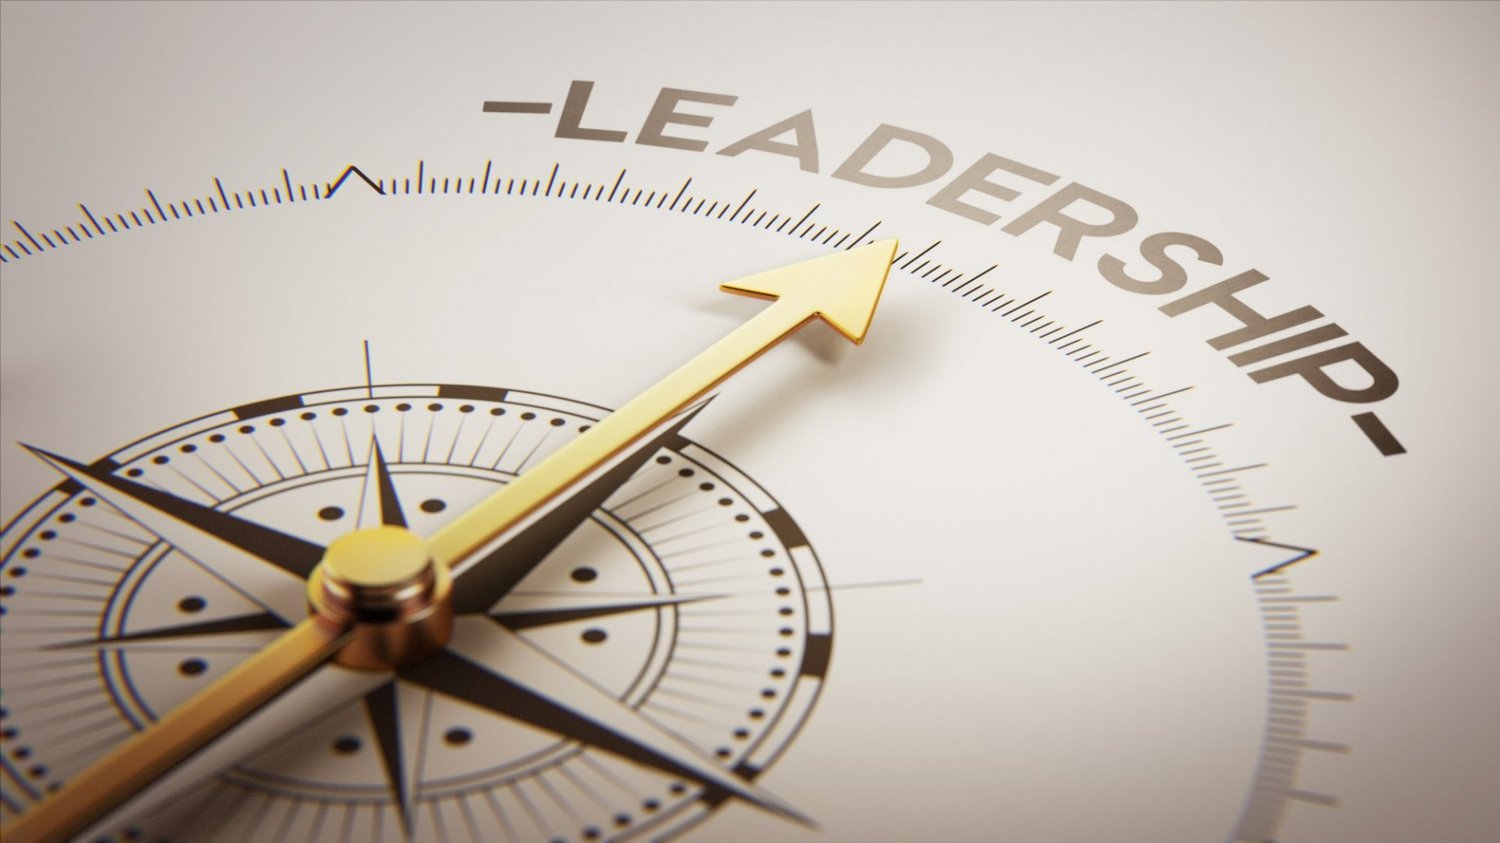 Hogyan tűnj ki vezetőként? A Vetikális Vezetés coaching perspektívája. Pőcze Tamás, vezetői coaching, vezetők fejlesztése, vezetői tréning, vezetőképzés,